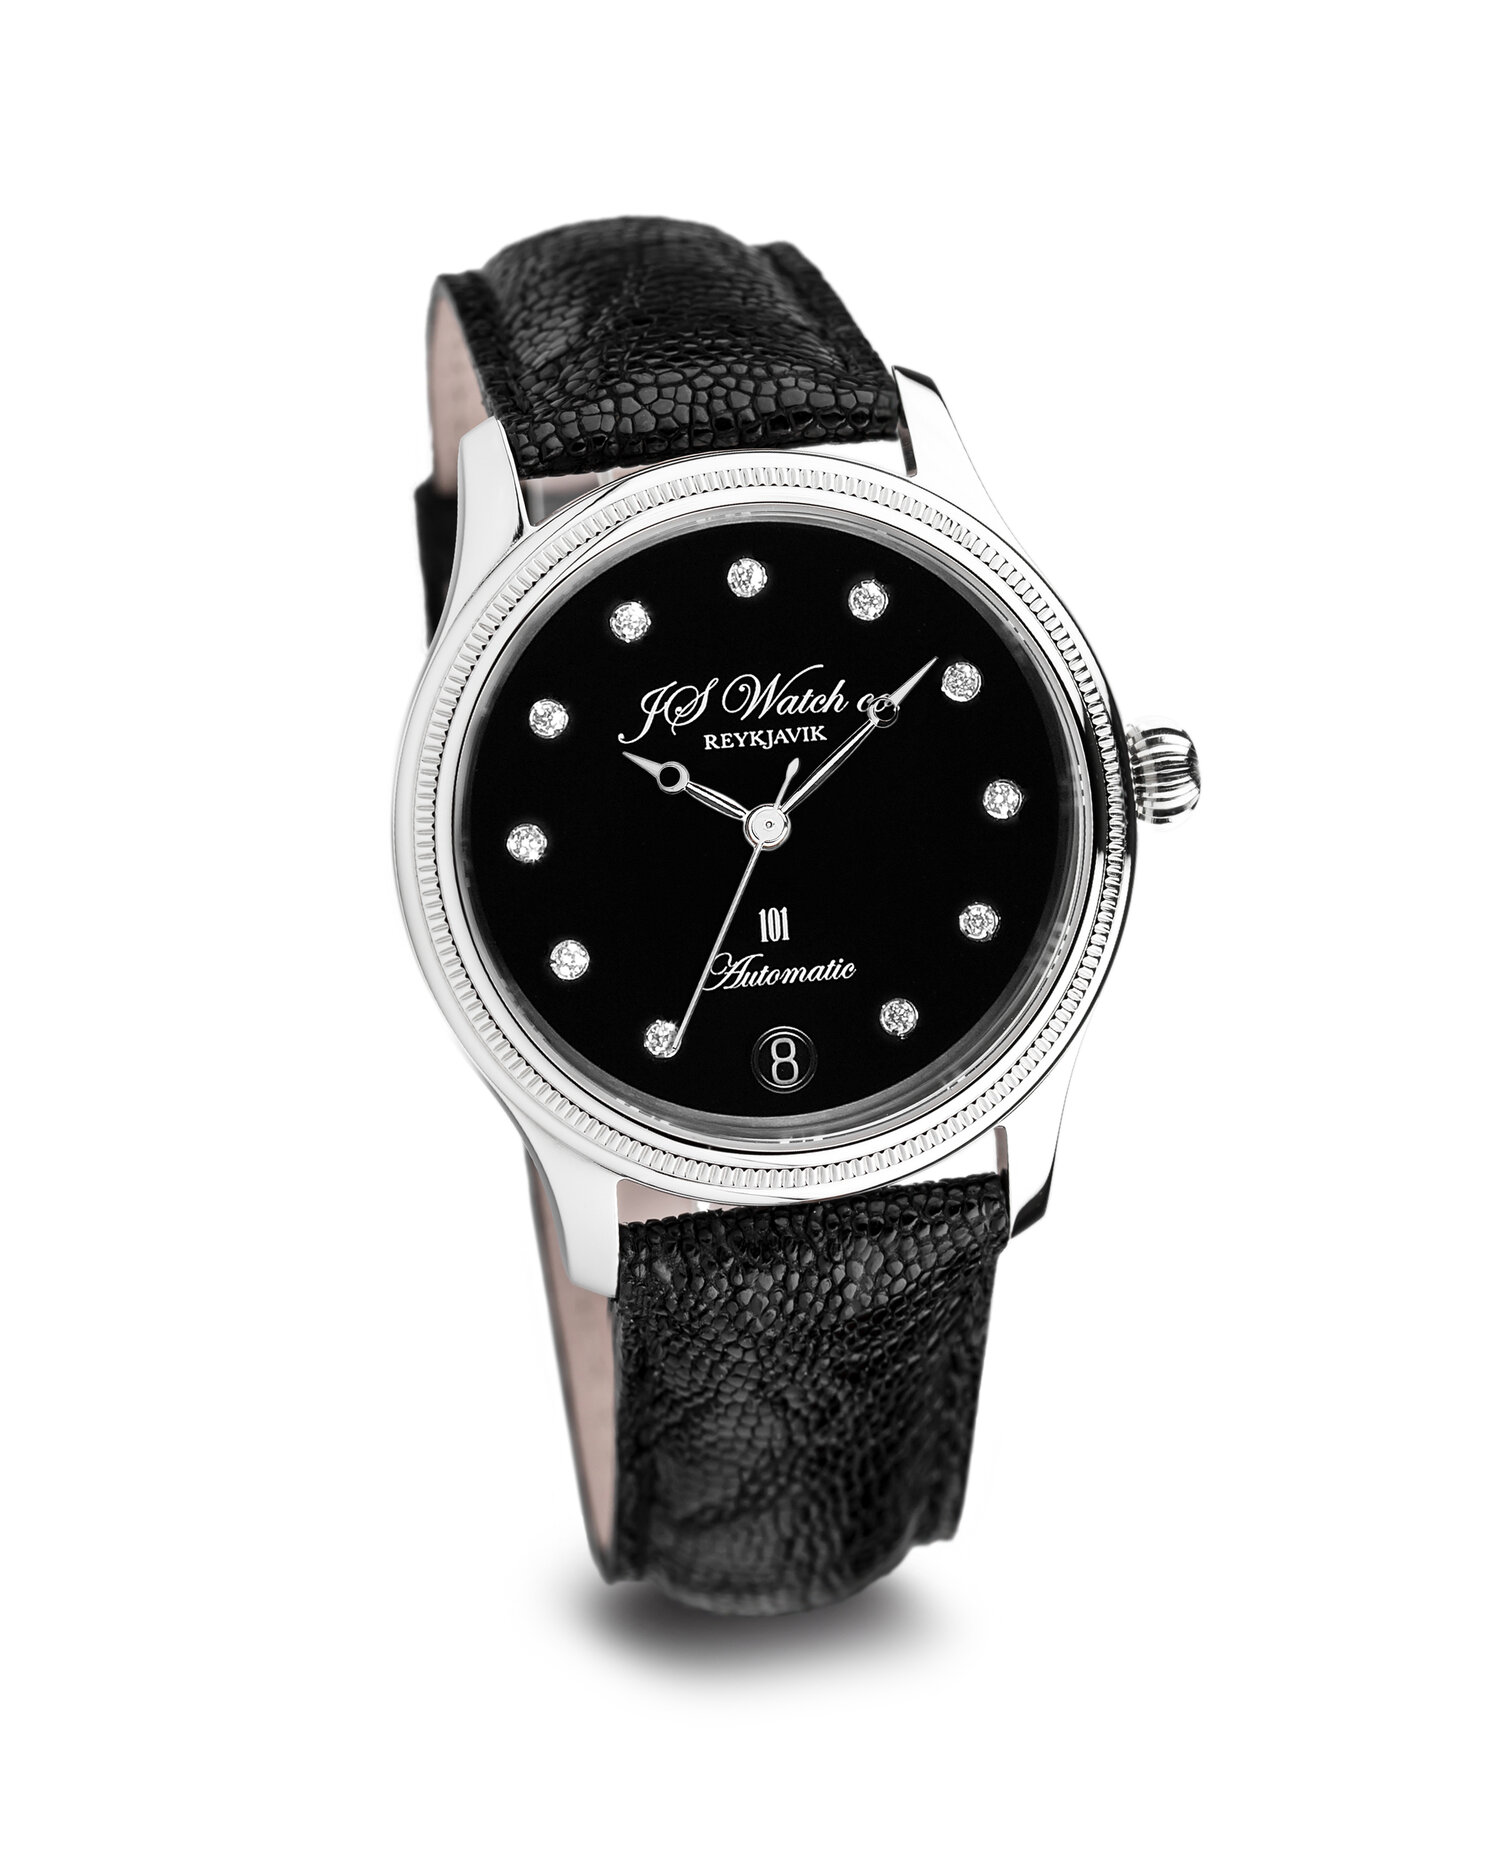 Swiss Luxury Watch Company